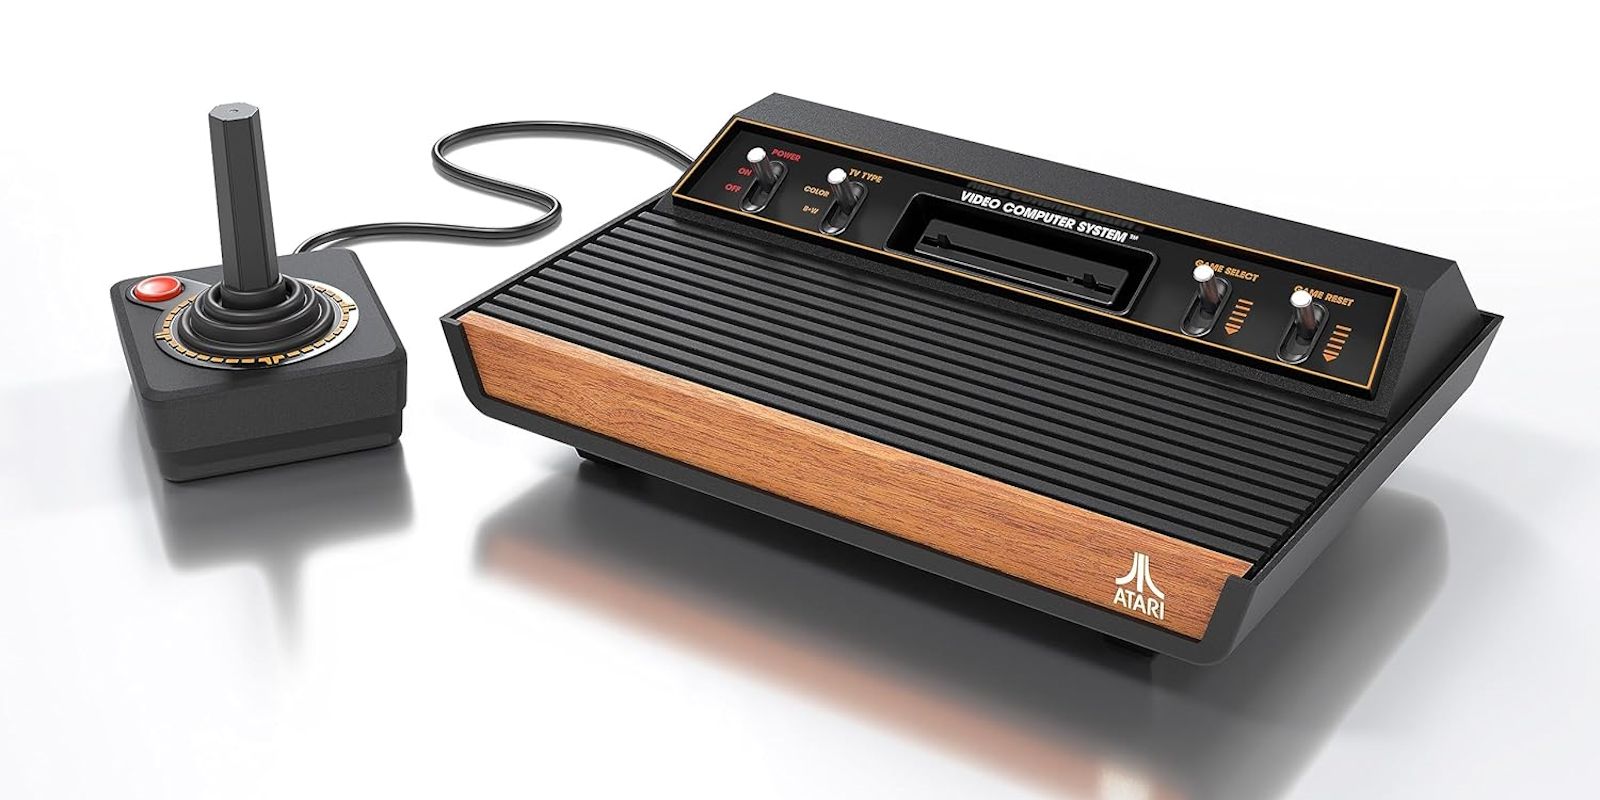 "Una máquina bellamente diseñada"" Revisión de Atari 2600+